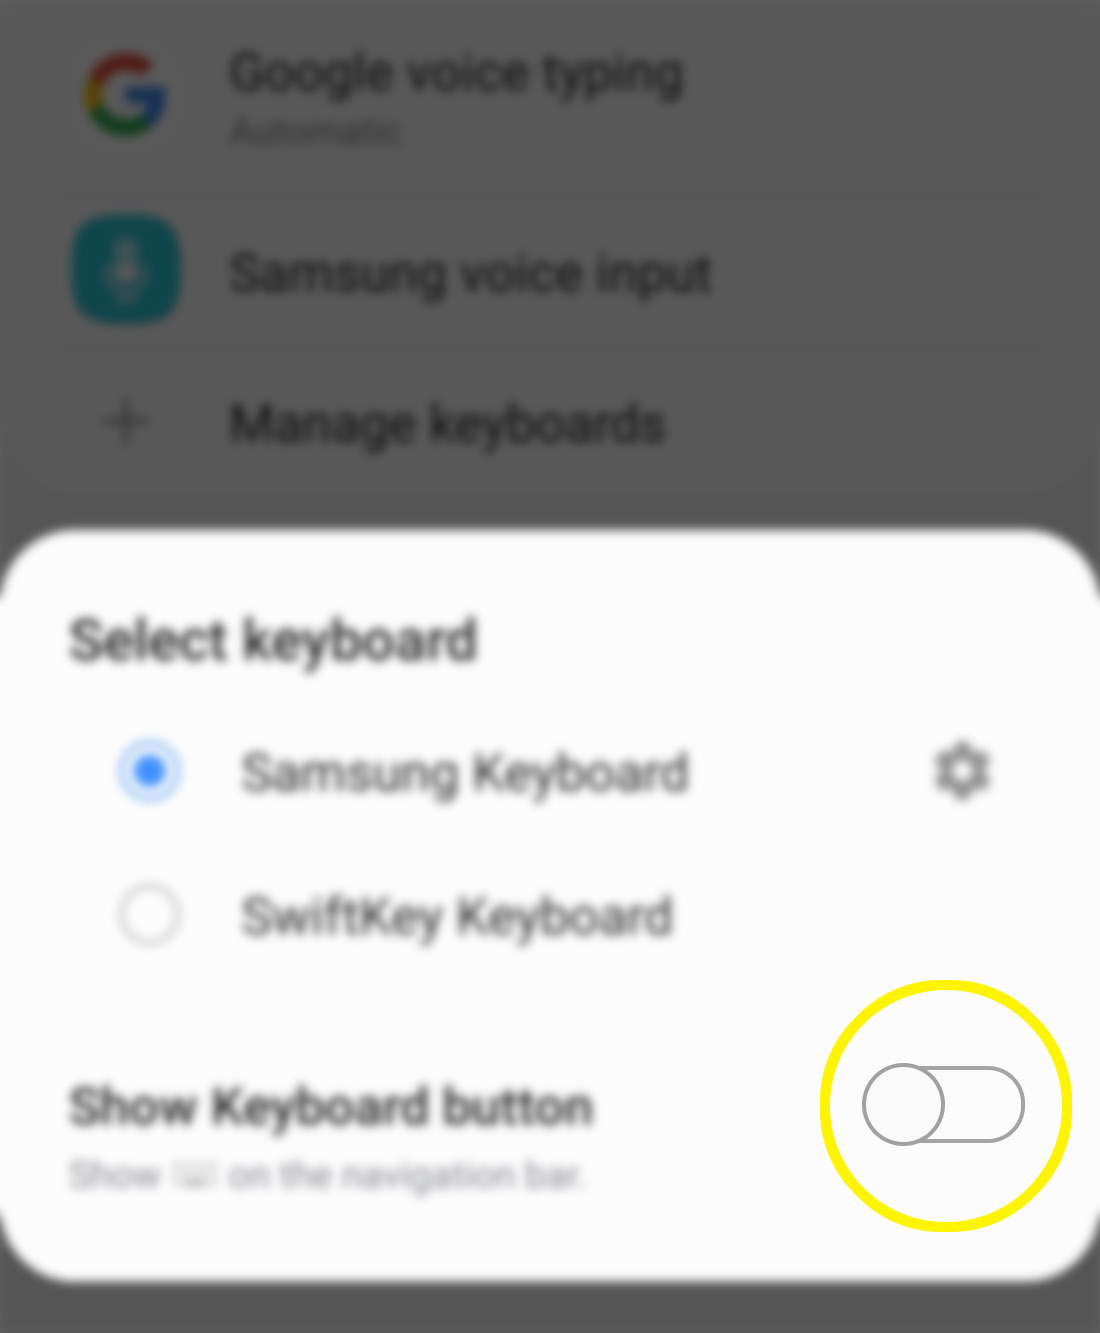 show keyboard button